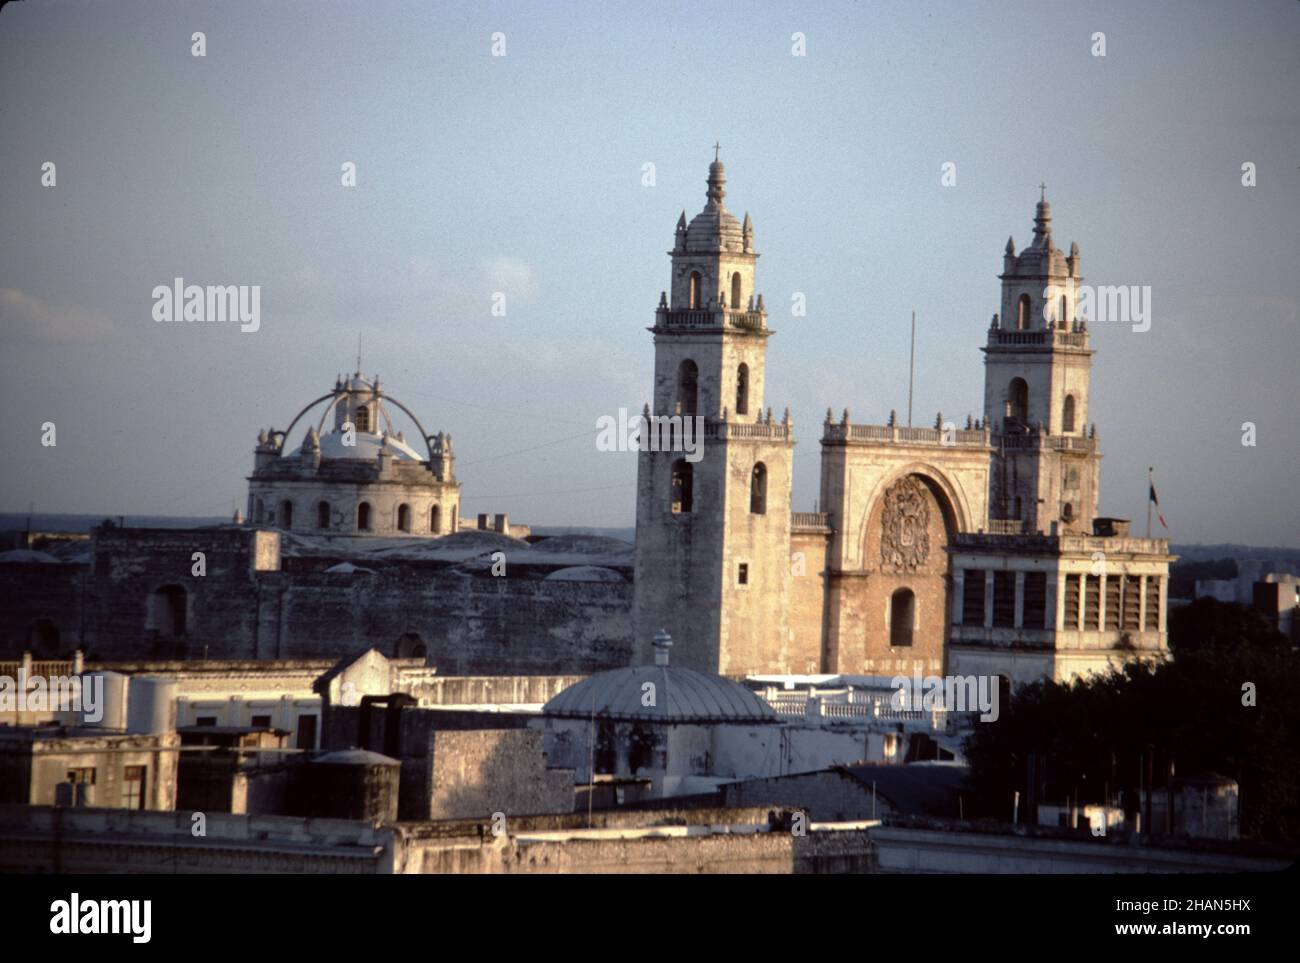 Merida, Mexiko. 12/27/1985. Kathedrale San Ildefonso. Erbaut auf dem Gelände einer Maya-Ruinen um 1525-1568. Stockfoto